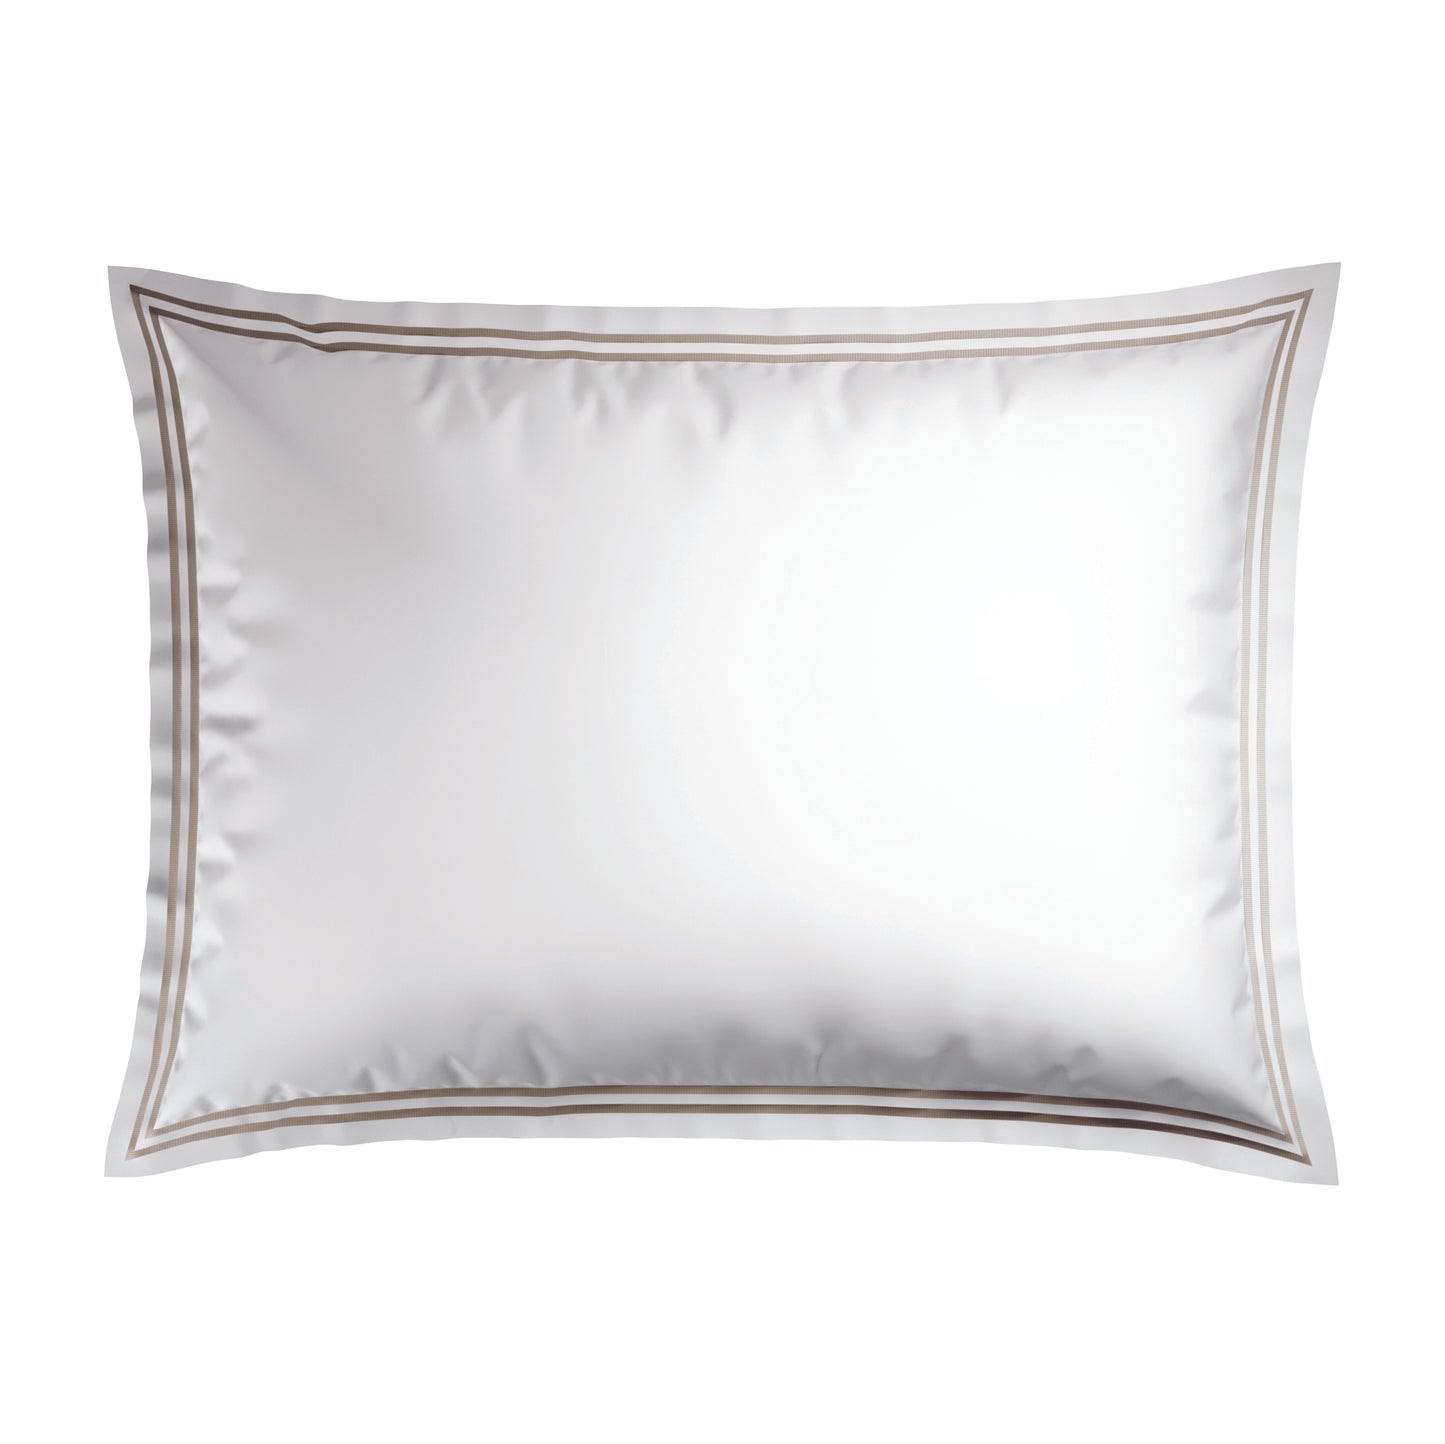 Pillowcase(s) cotton satin - Nice White / Taupe